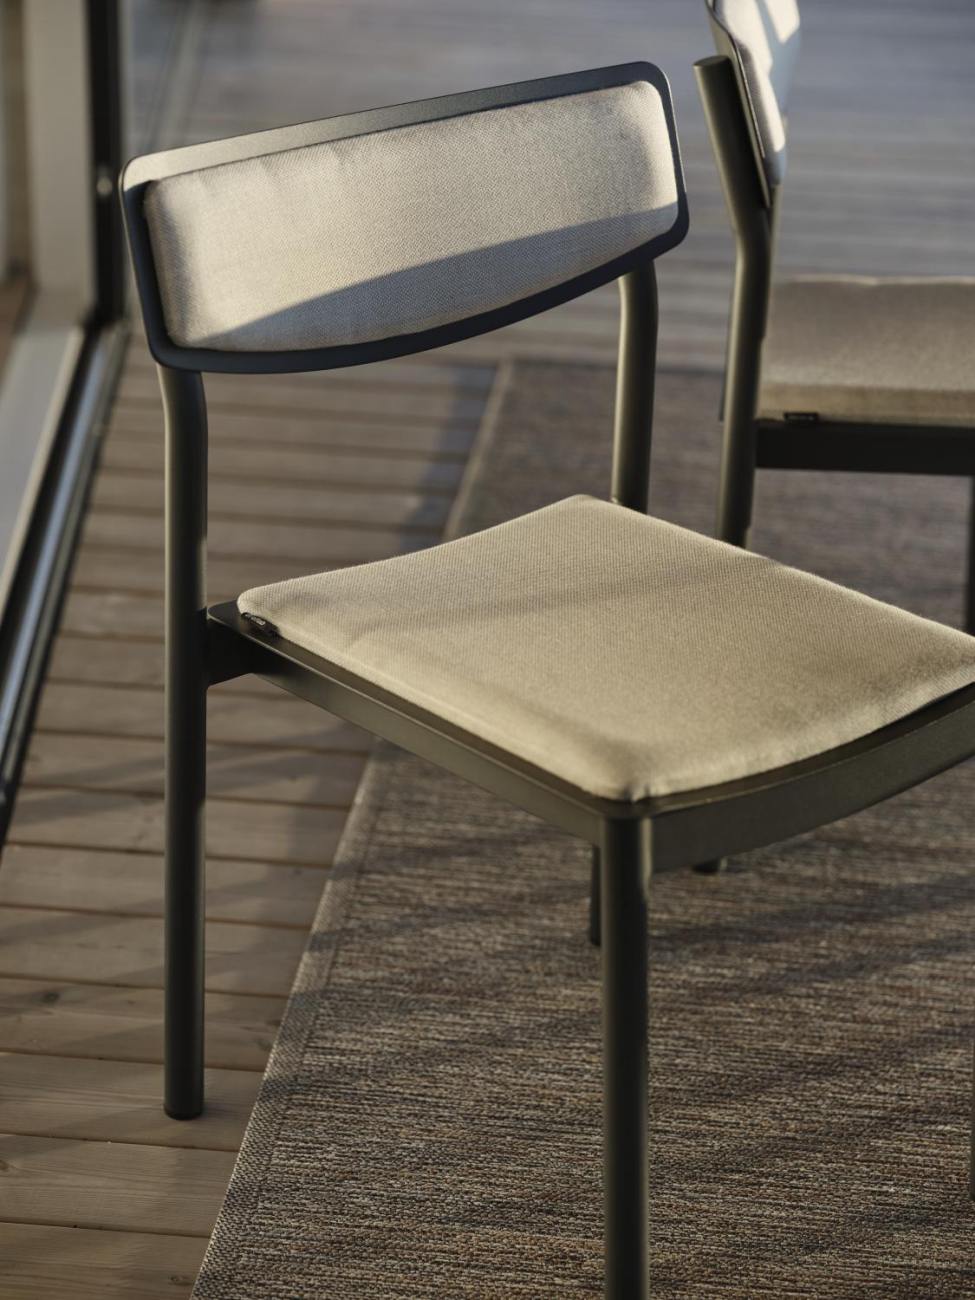 Der Gartenstuhl Gusty überzeugt mit seinem modernen Design. Gefertigt wurde er aus Stoff, welches einen hellgrauen Farbton besitzt. Das Gestell ist aus Metall und hat eine Anthrazit Farbe. Die Sitzhöhe des Stuhls beträgt 47 cm.